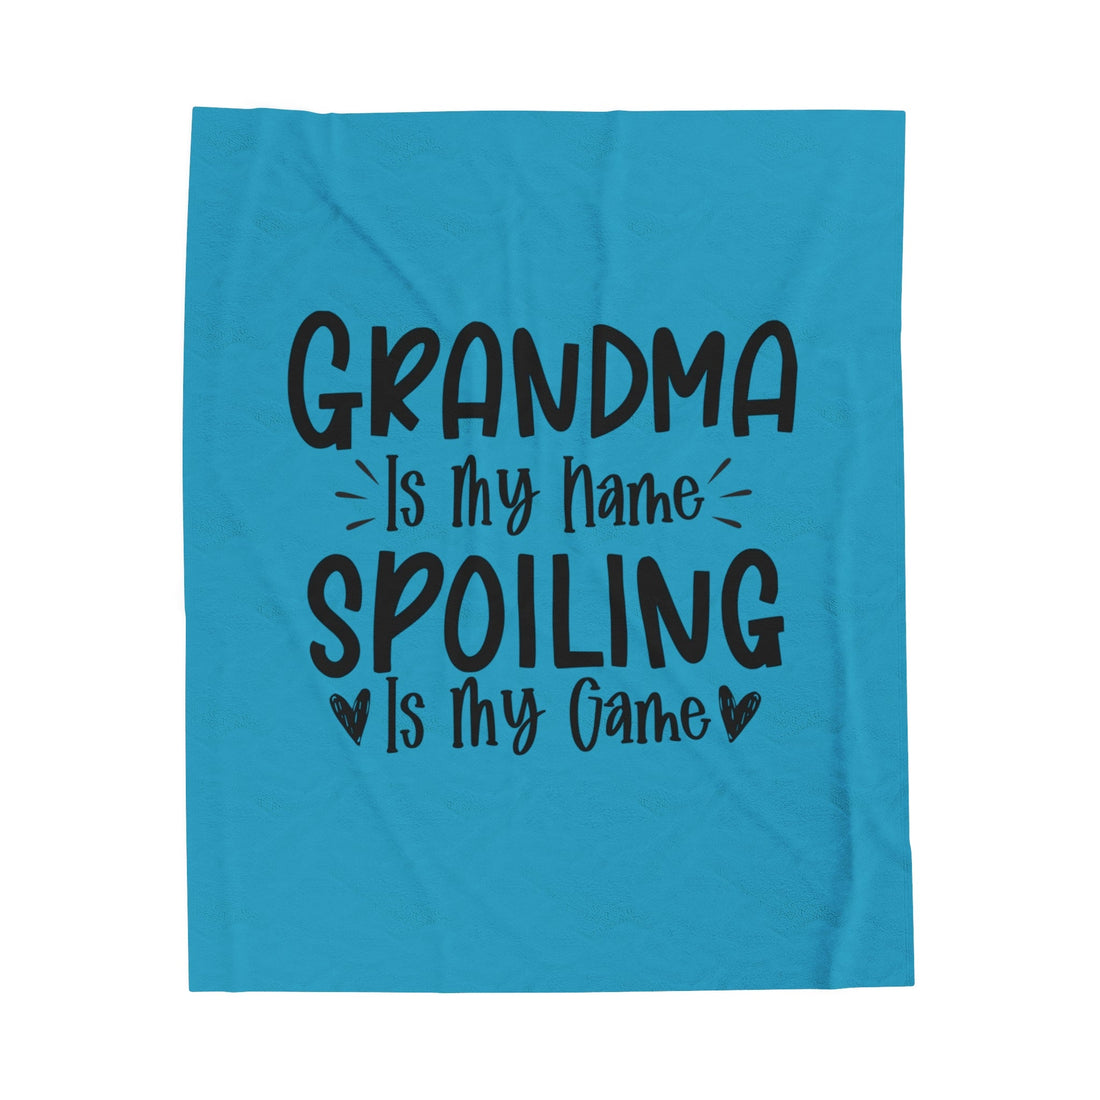 Grandma Spoils Velveteen Plush Blanket - All Over Prints - Positively Sassy - Grandma Spoils Velveteen Plush Blanket